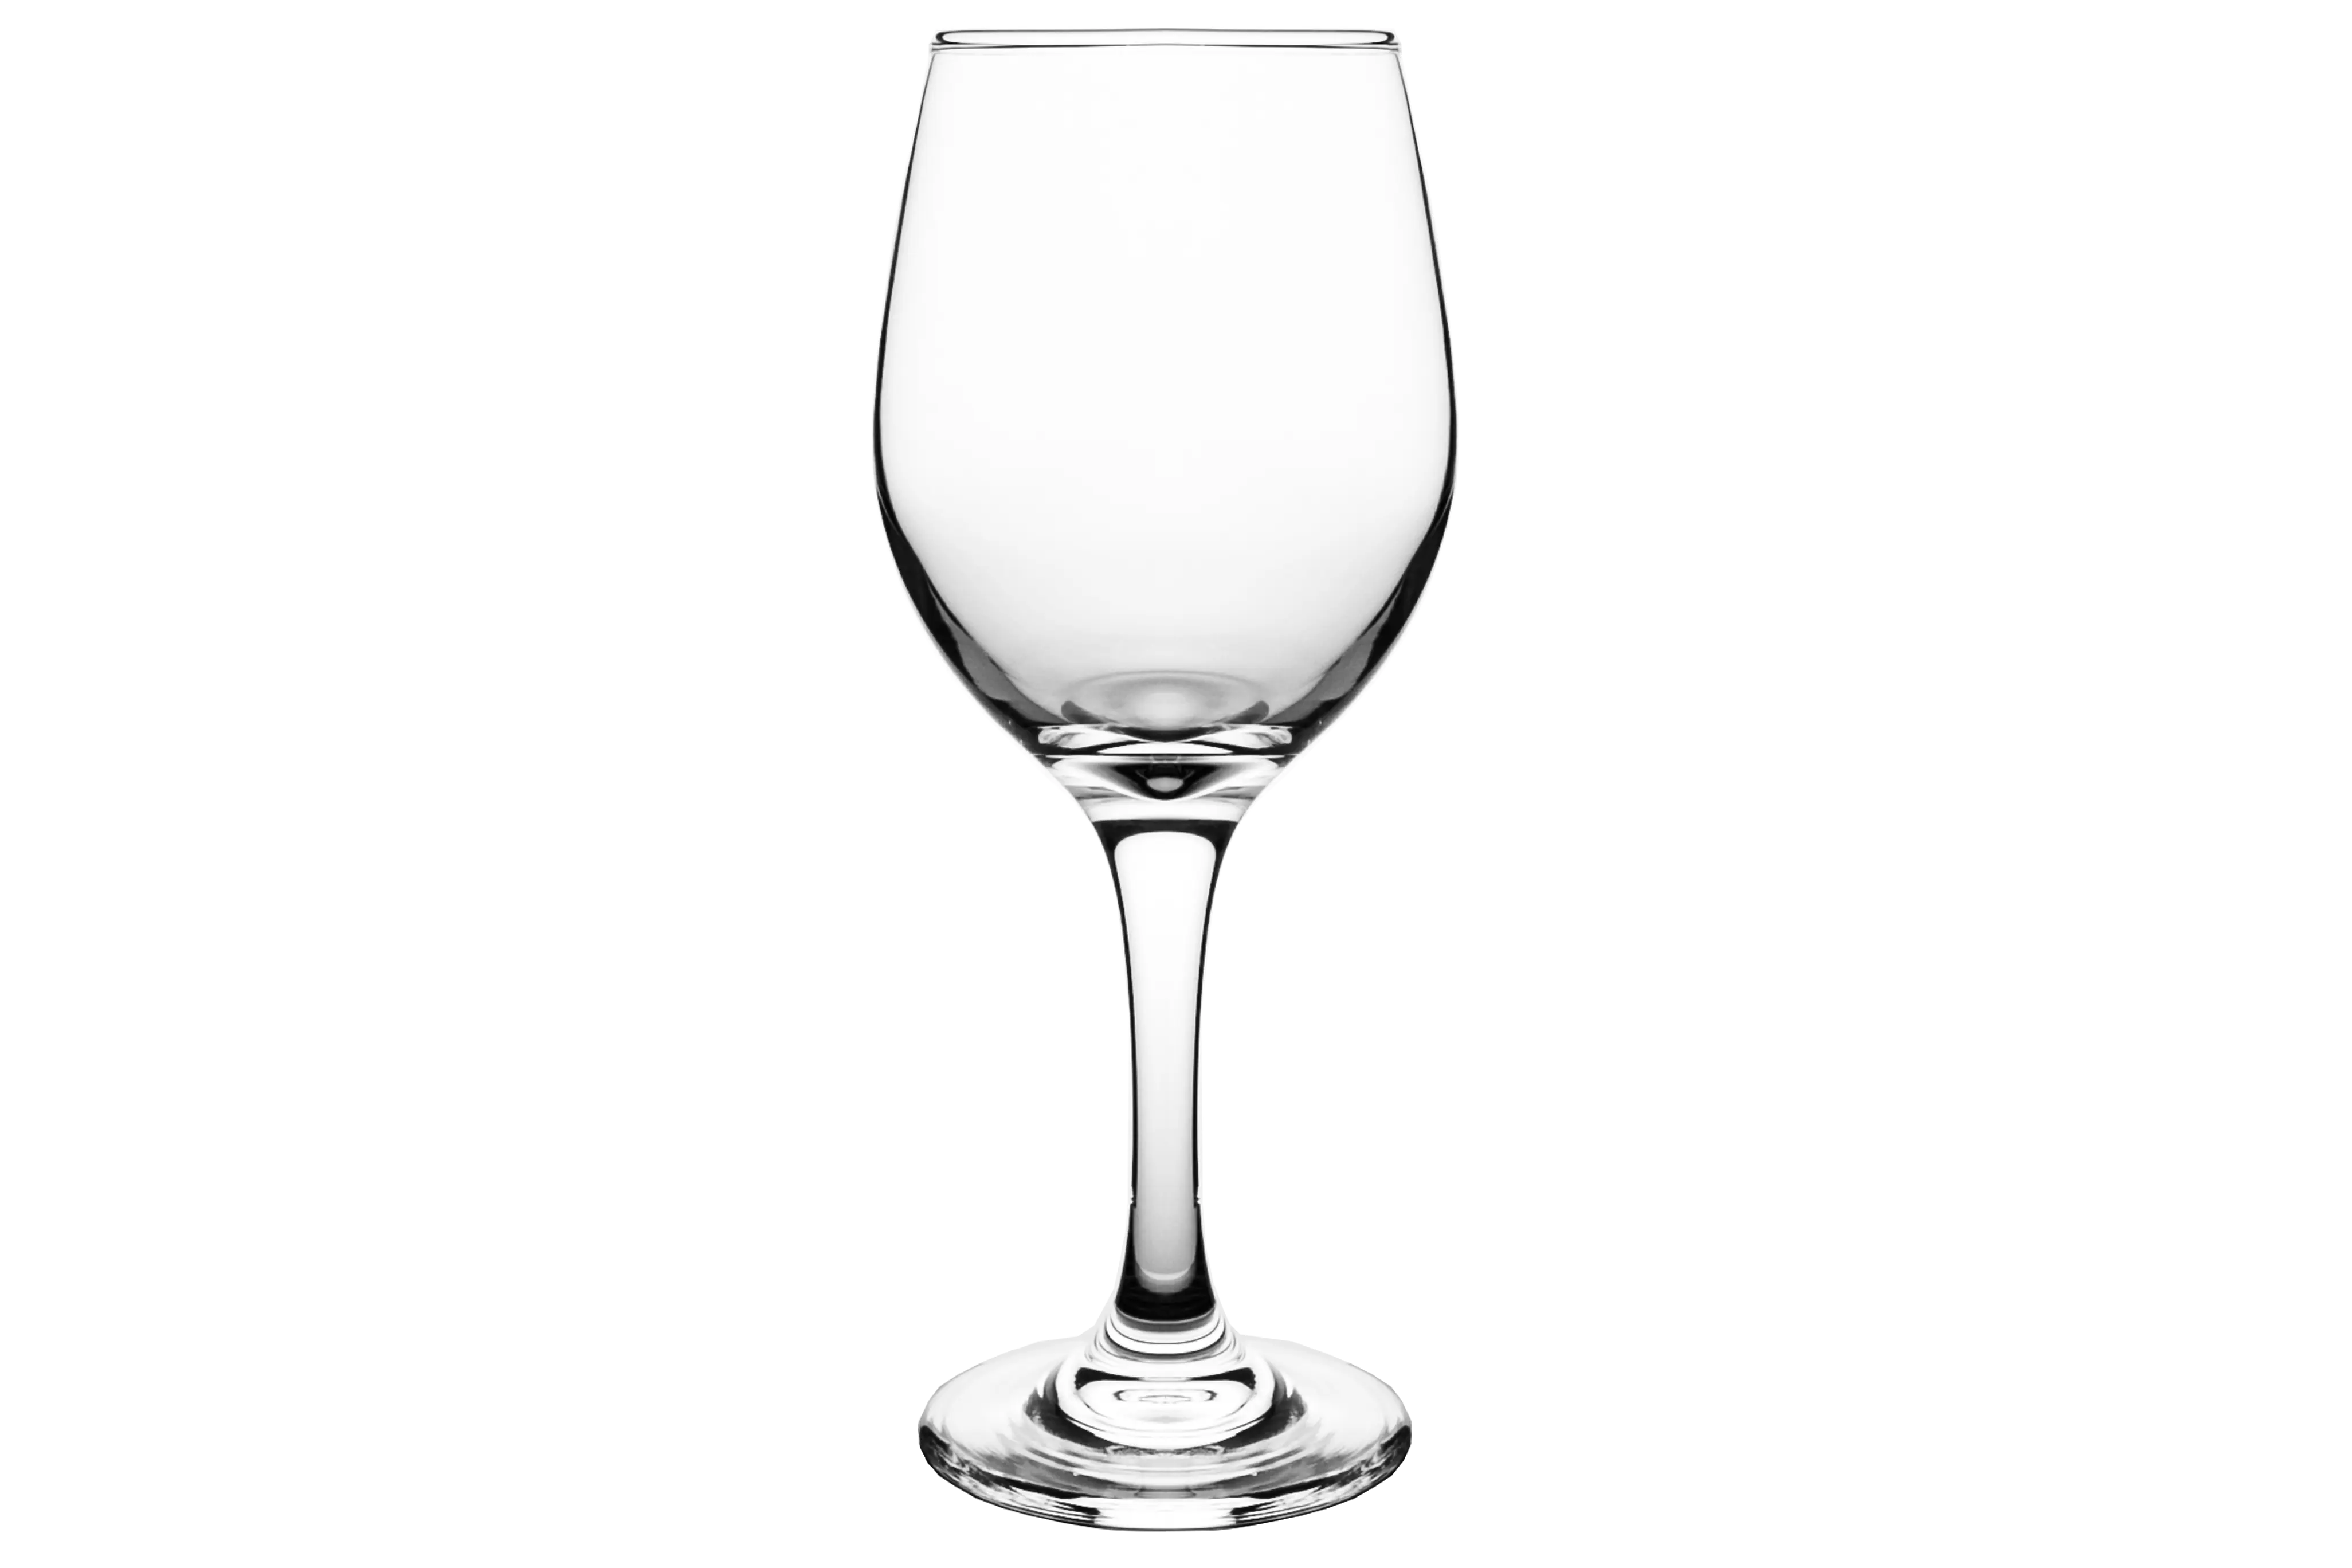 Özel Logo kurşunsuz uzun kök temizle içme için cam kırmızı şarap şişesi beyaz kırmızı şarap kadehleri kadeh